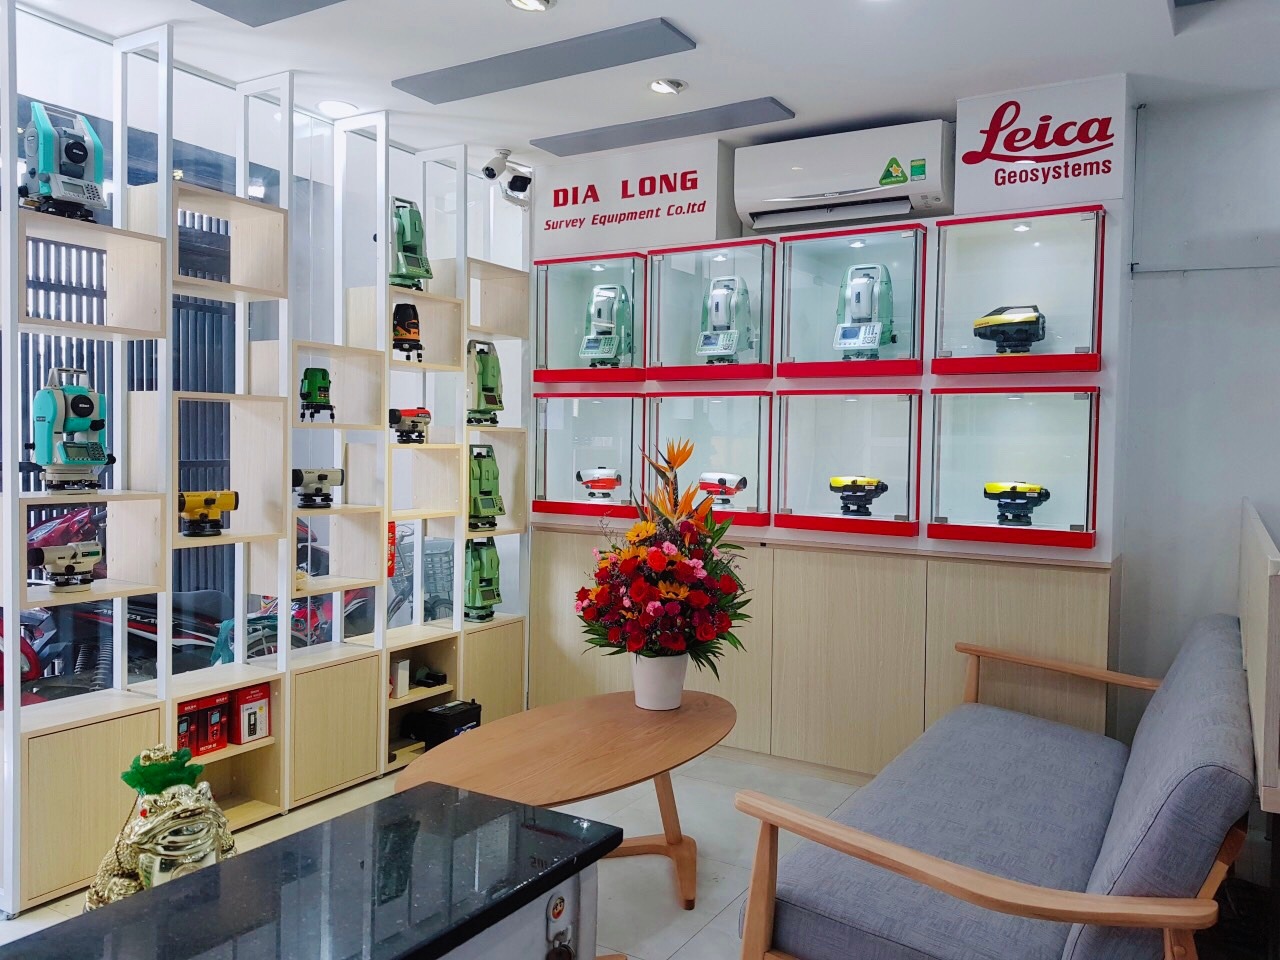 Mua máy toàn đạc Leica tại công ty Địa Long giá rẻ tại 2 chi nhánh tphcm và Đà Nẵng